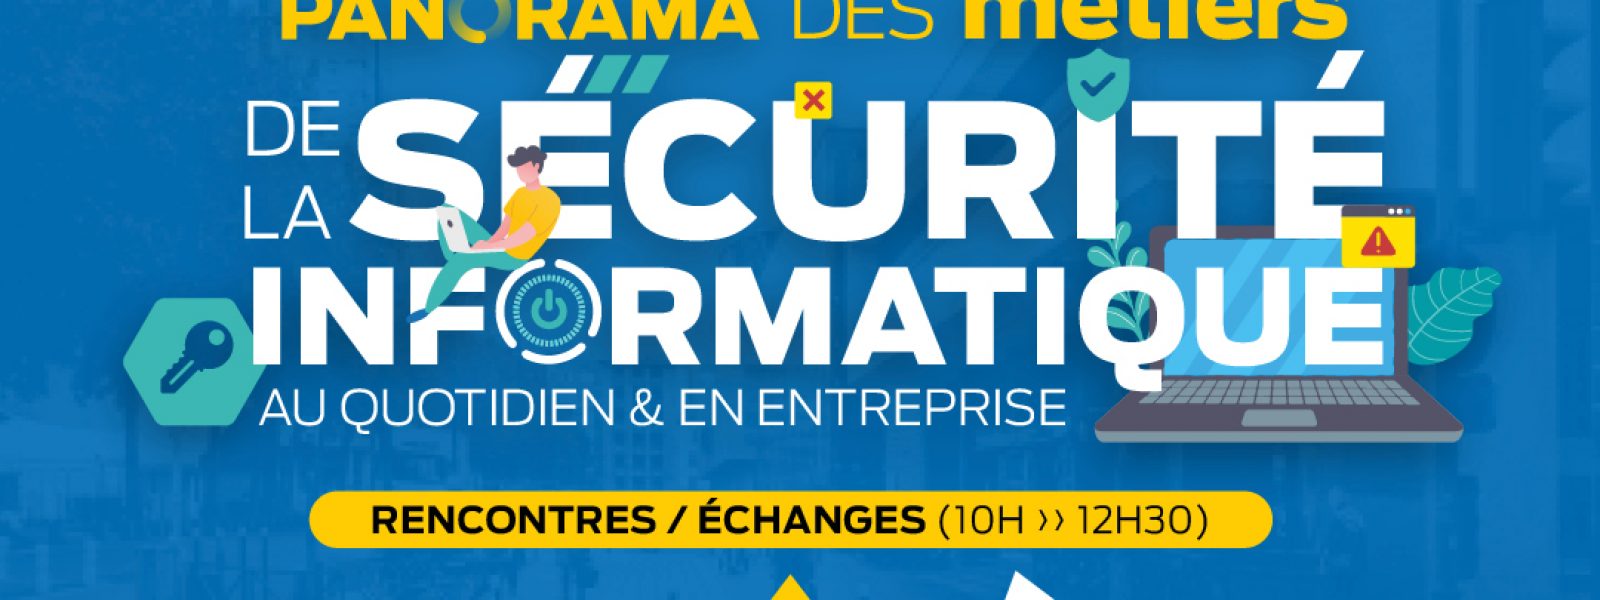 Visuel événement Panorama des métiers de la Sécurité Informatique